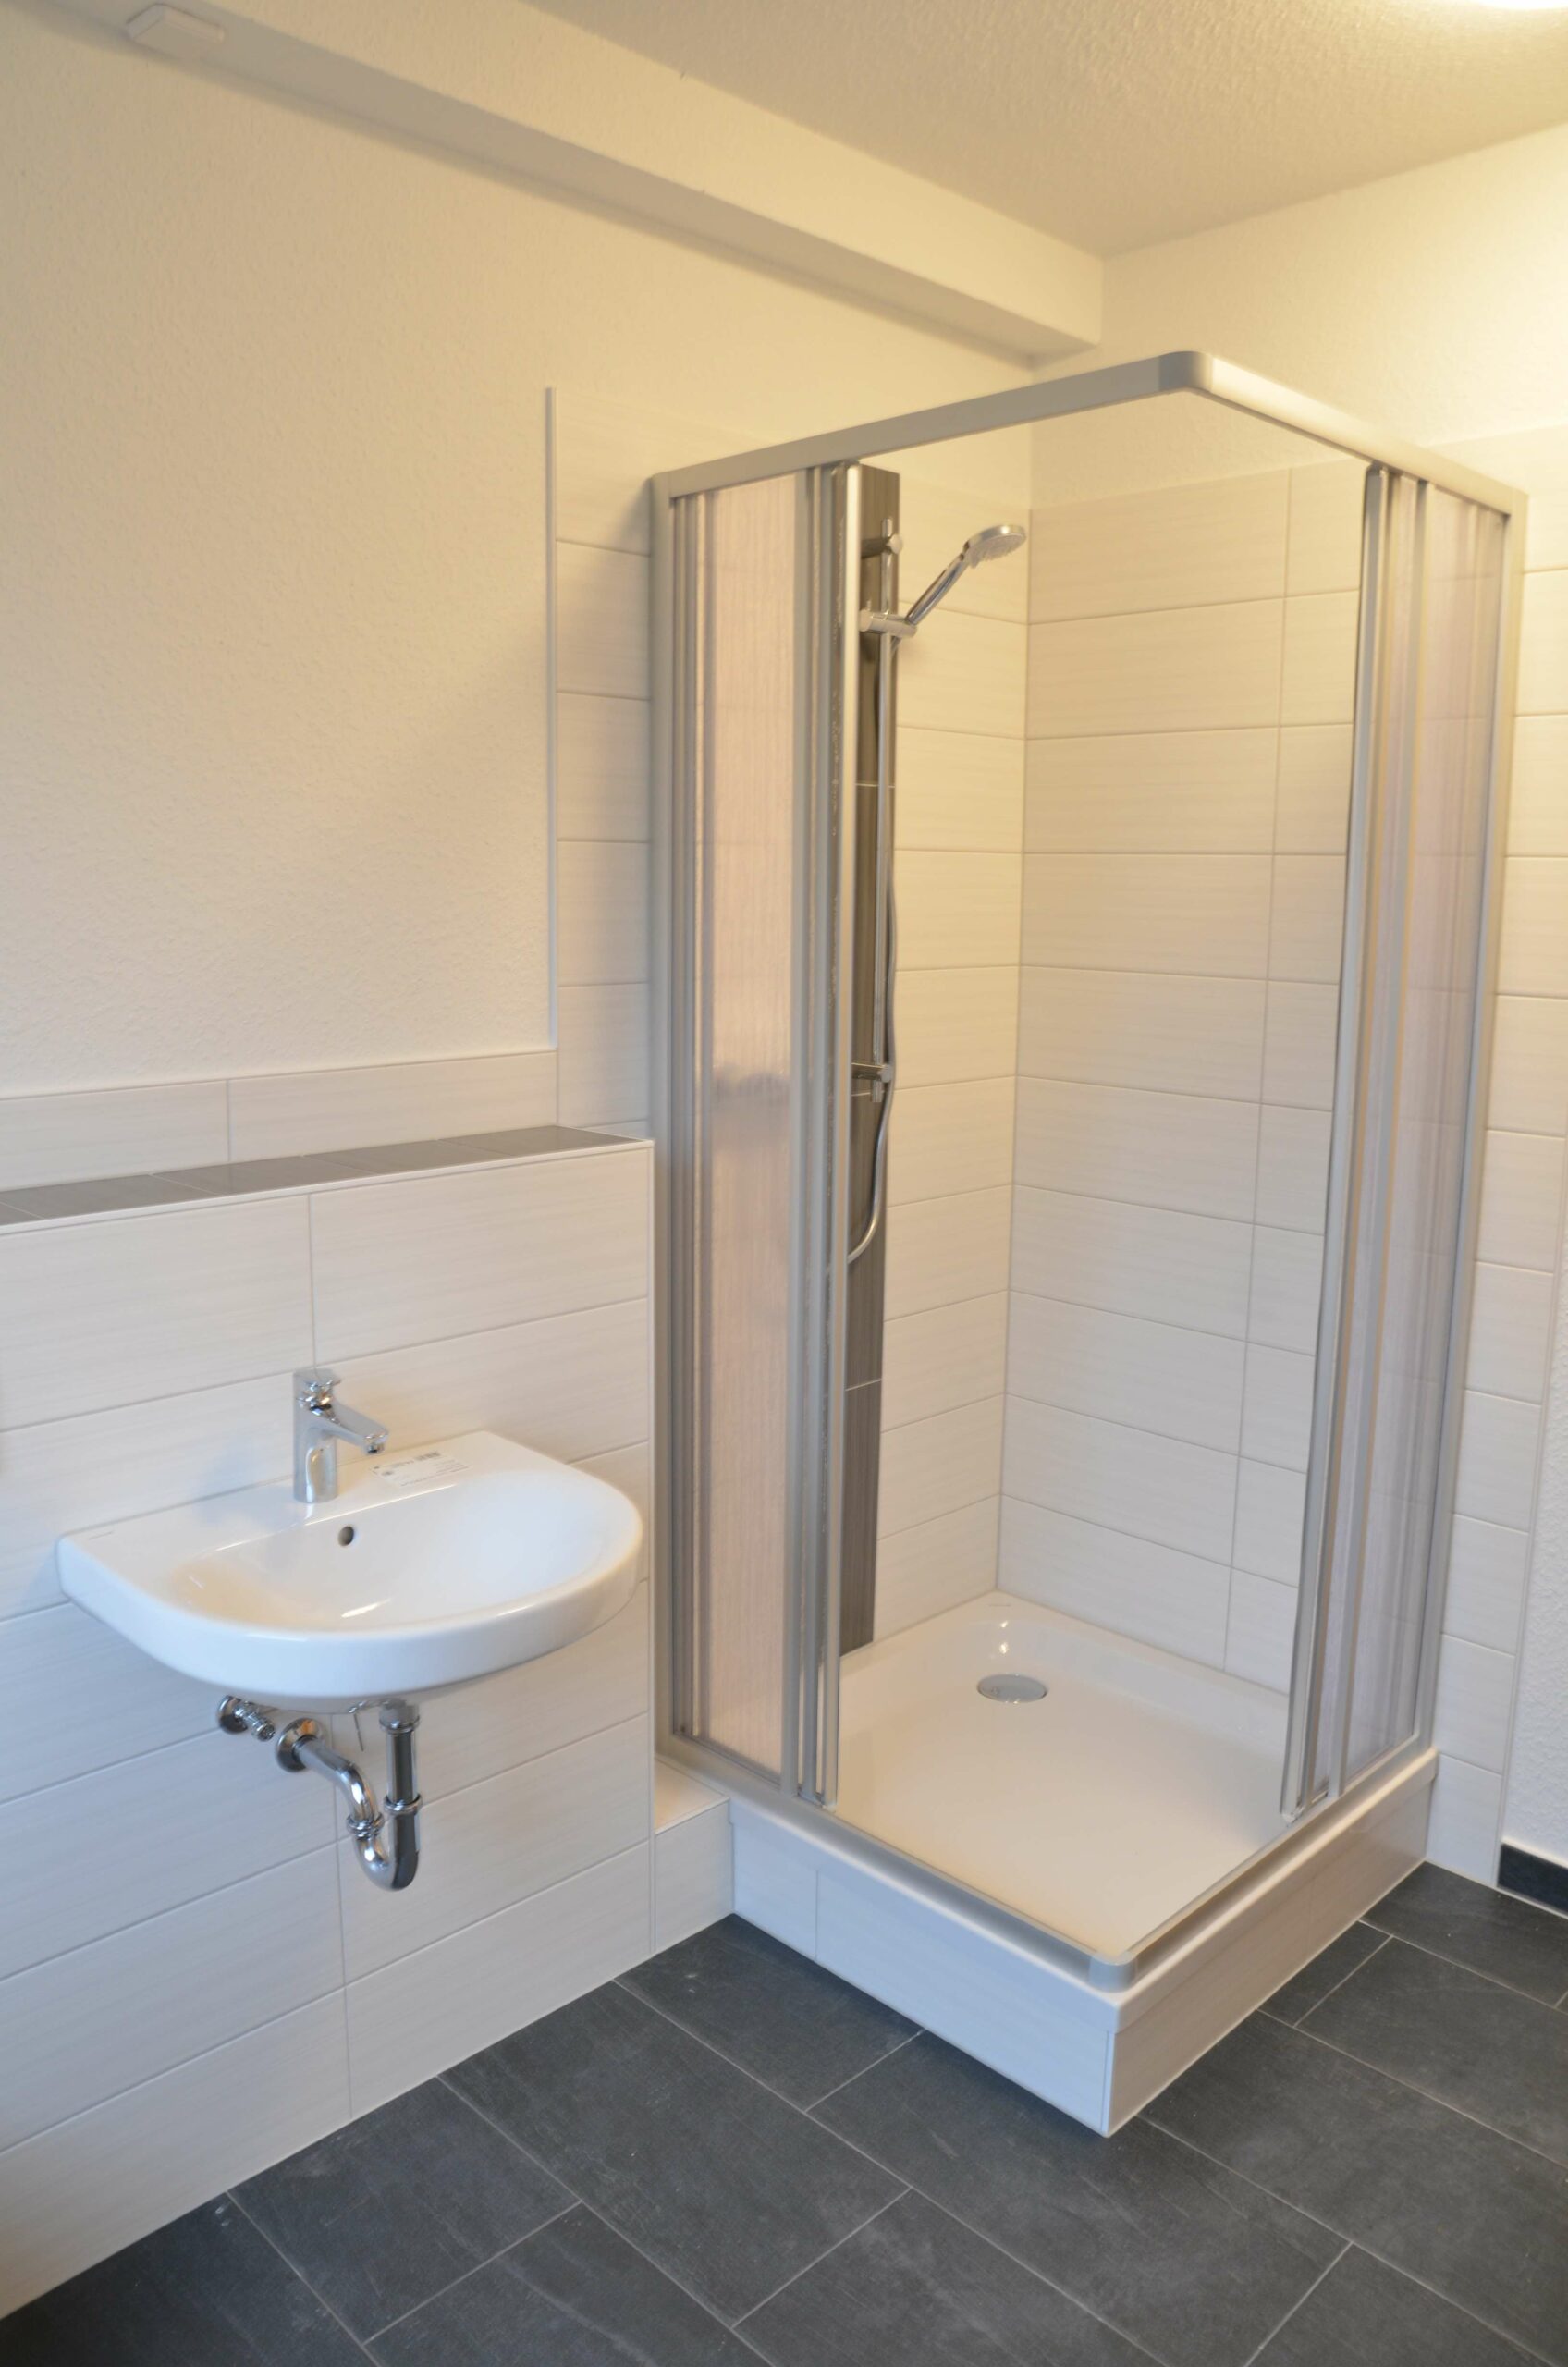 Wir sanieren für Sie! – Moderne 1-Raumwohnung mit offener Wohnküche - Badezimmer